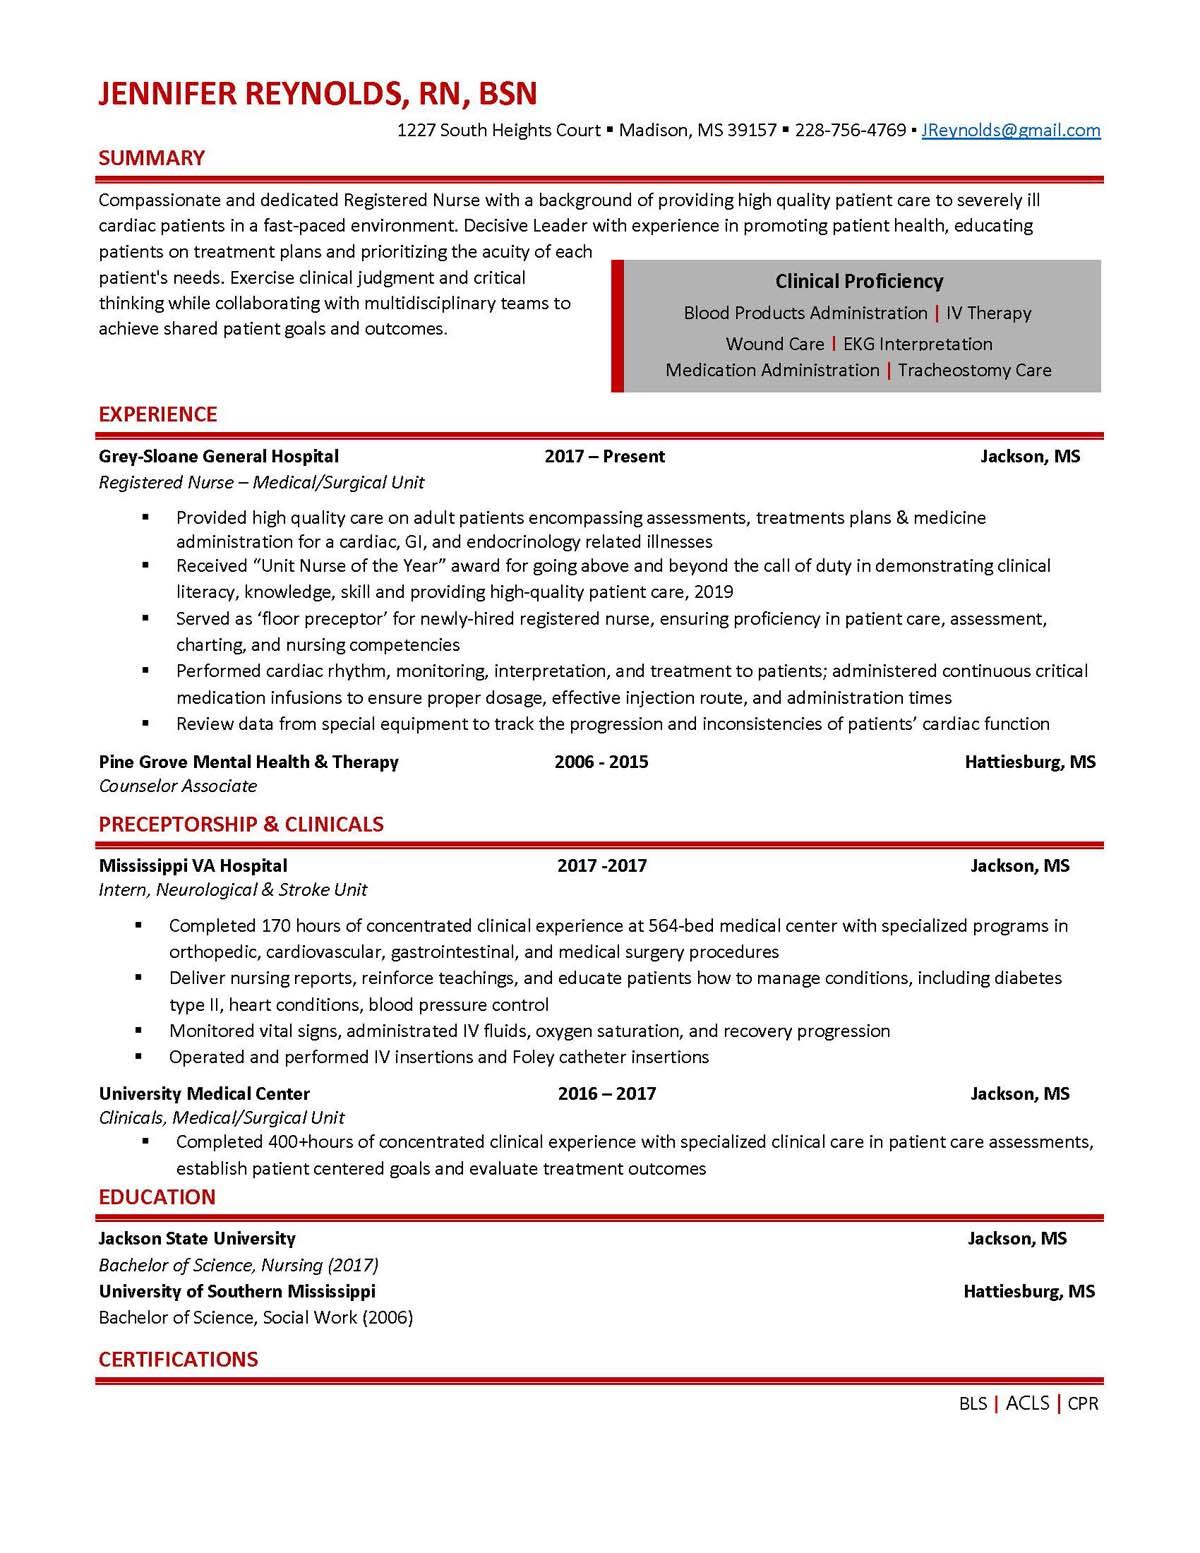 Sample resume: Nursing, Entry Level, Chronological